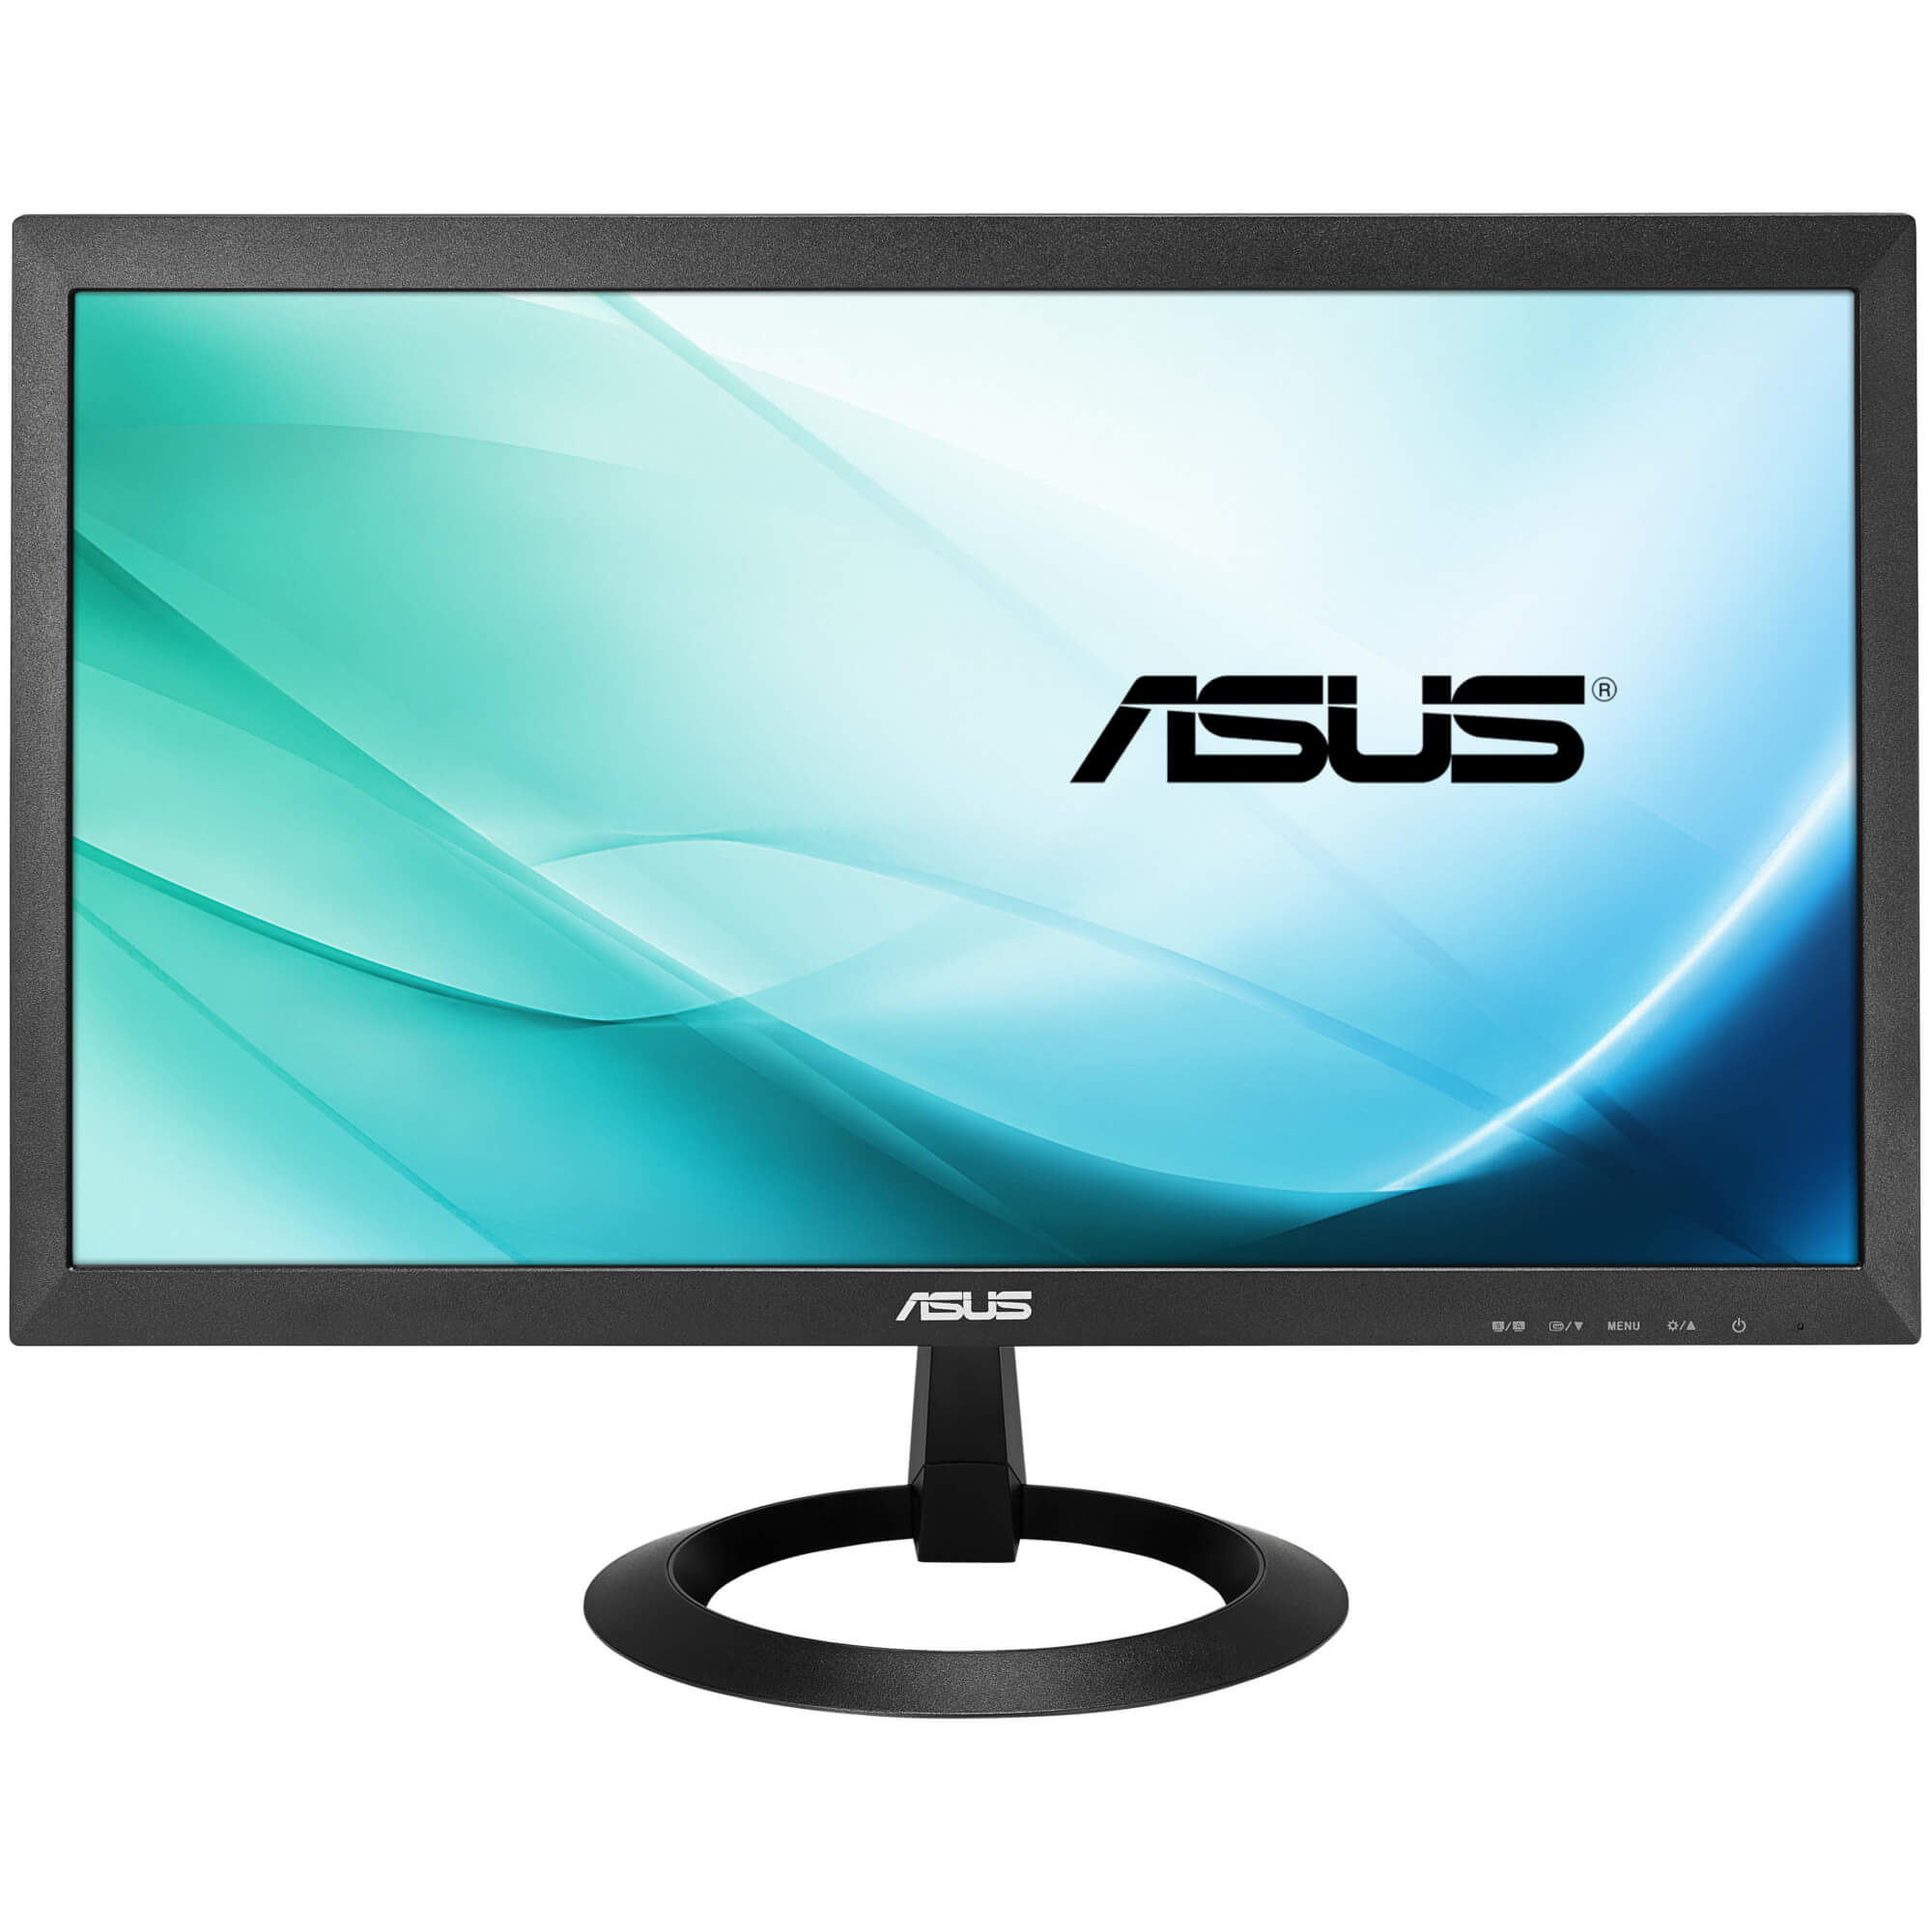  Monitor LED Asus VX207DE, 19.5", HD, Negru 